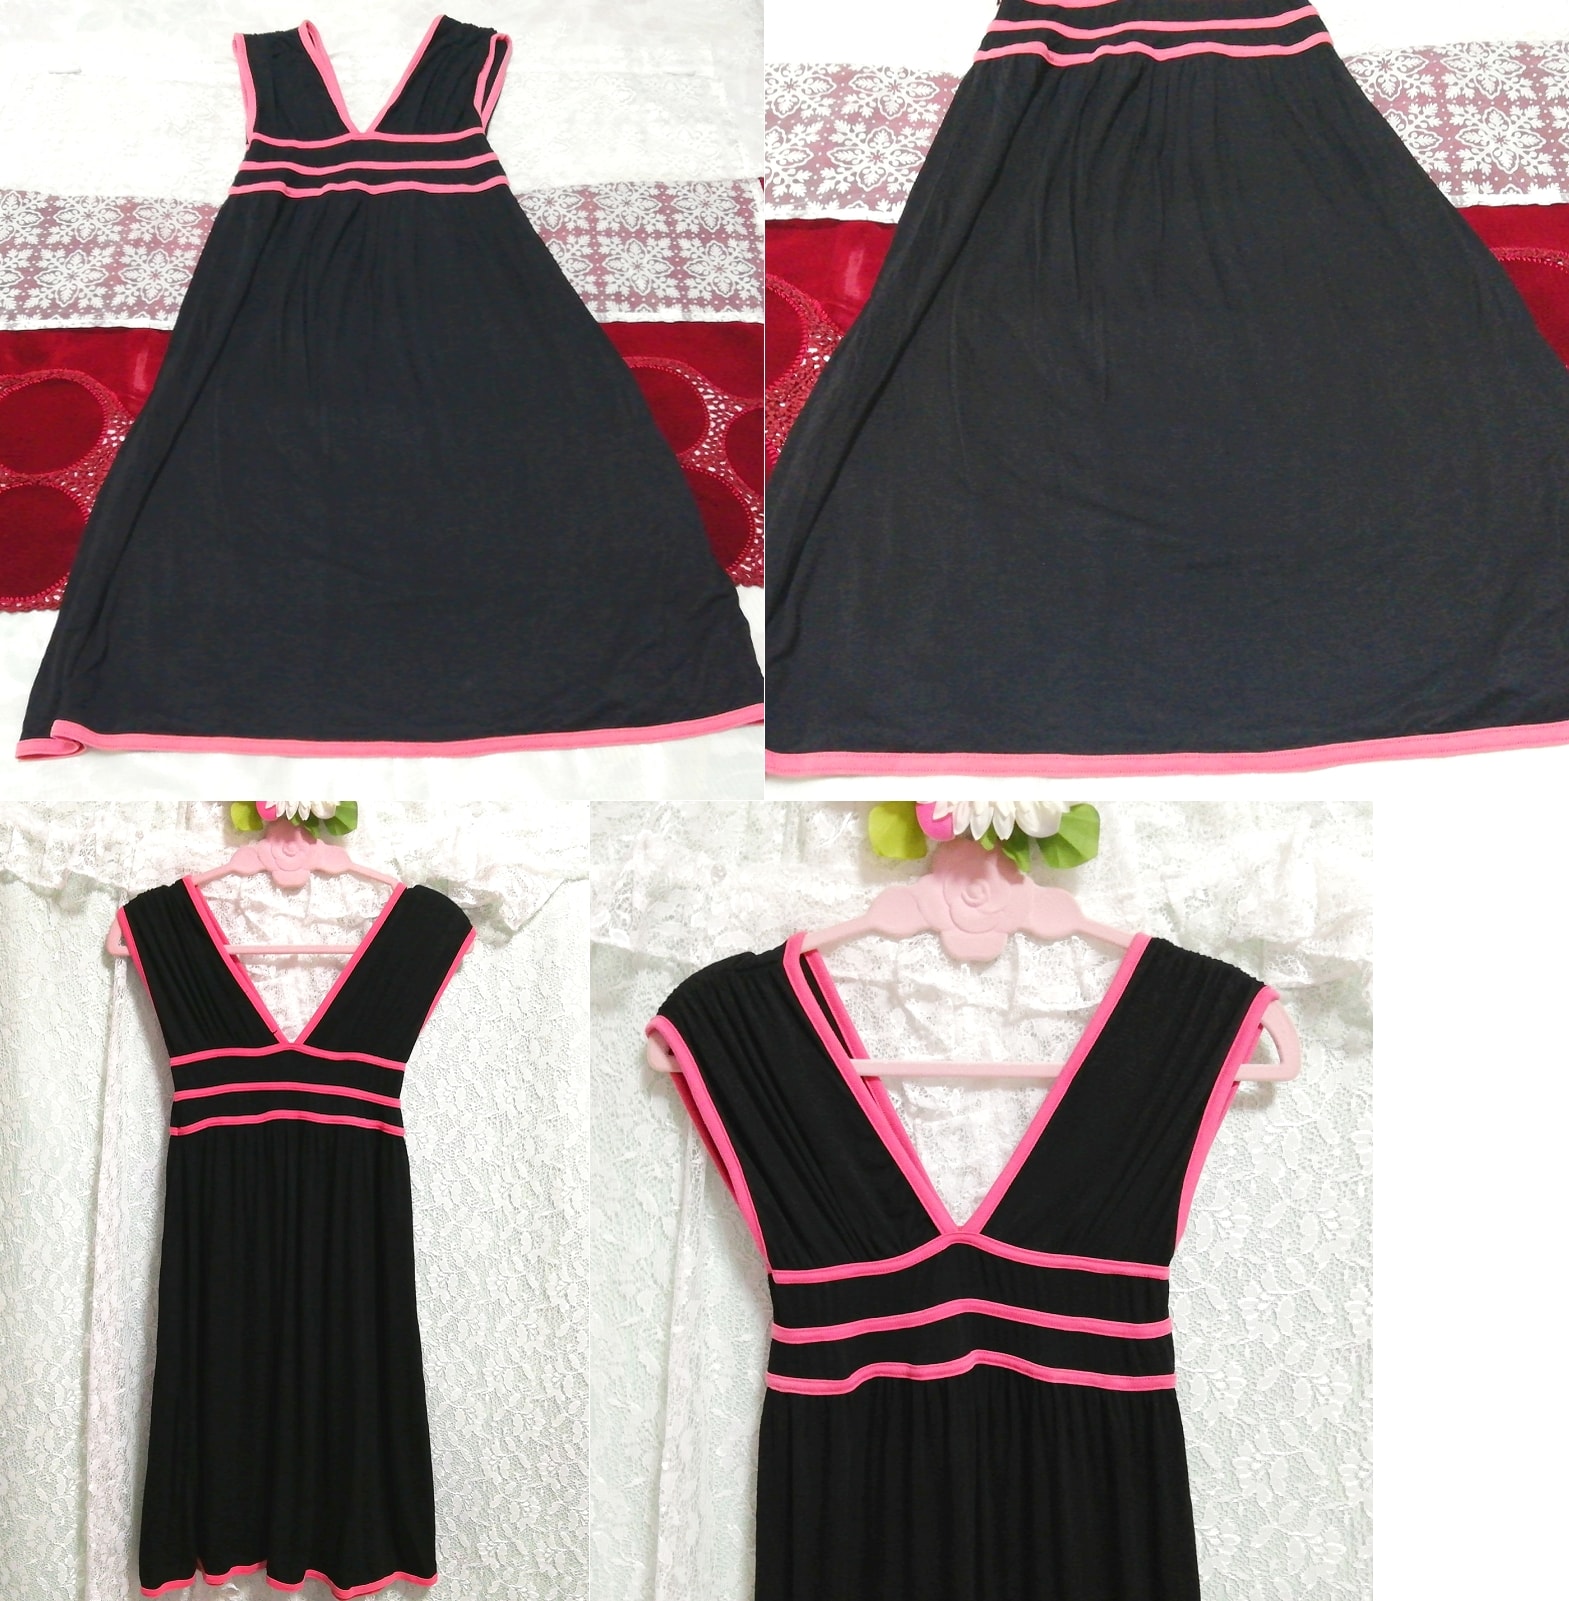 블랙 핑크 민소매 네글리제 나이트가운 나이트웨어 하프 드레스, 무릎길이 스커트, m 사이즈